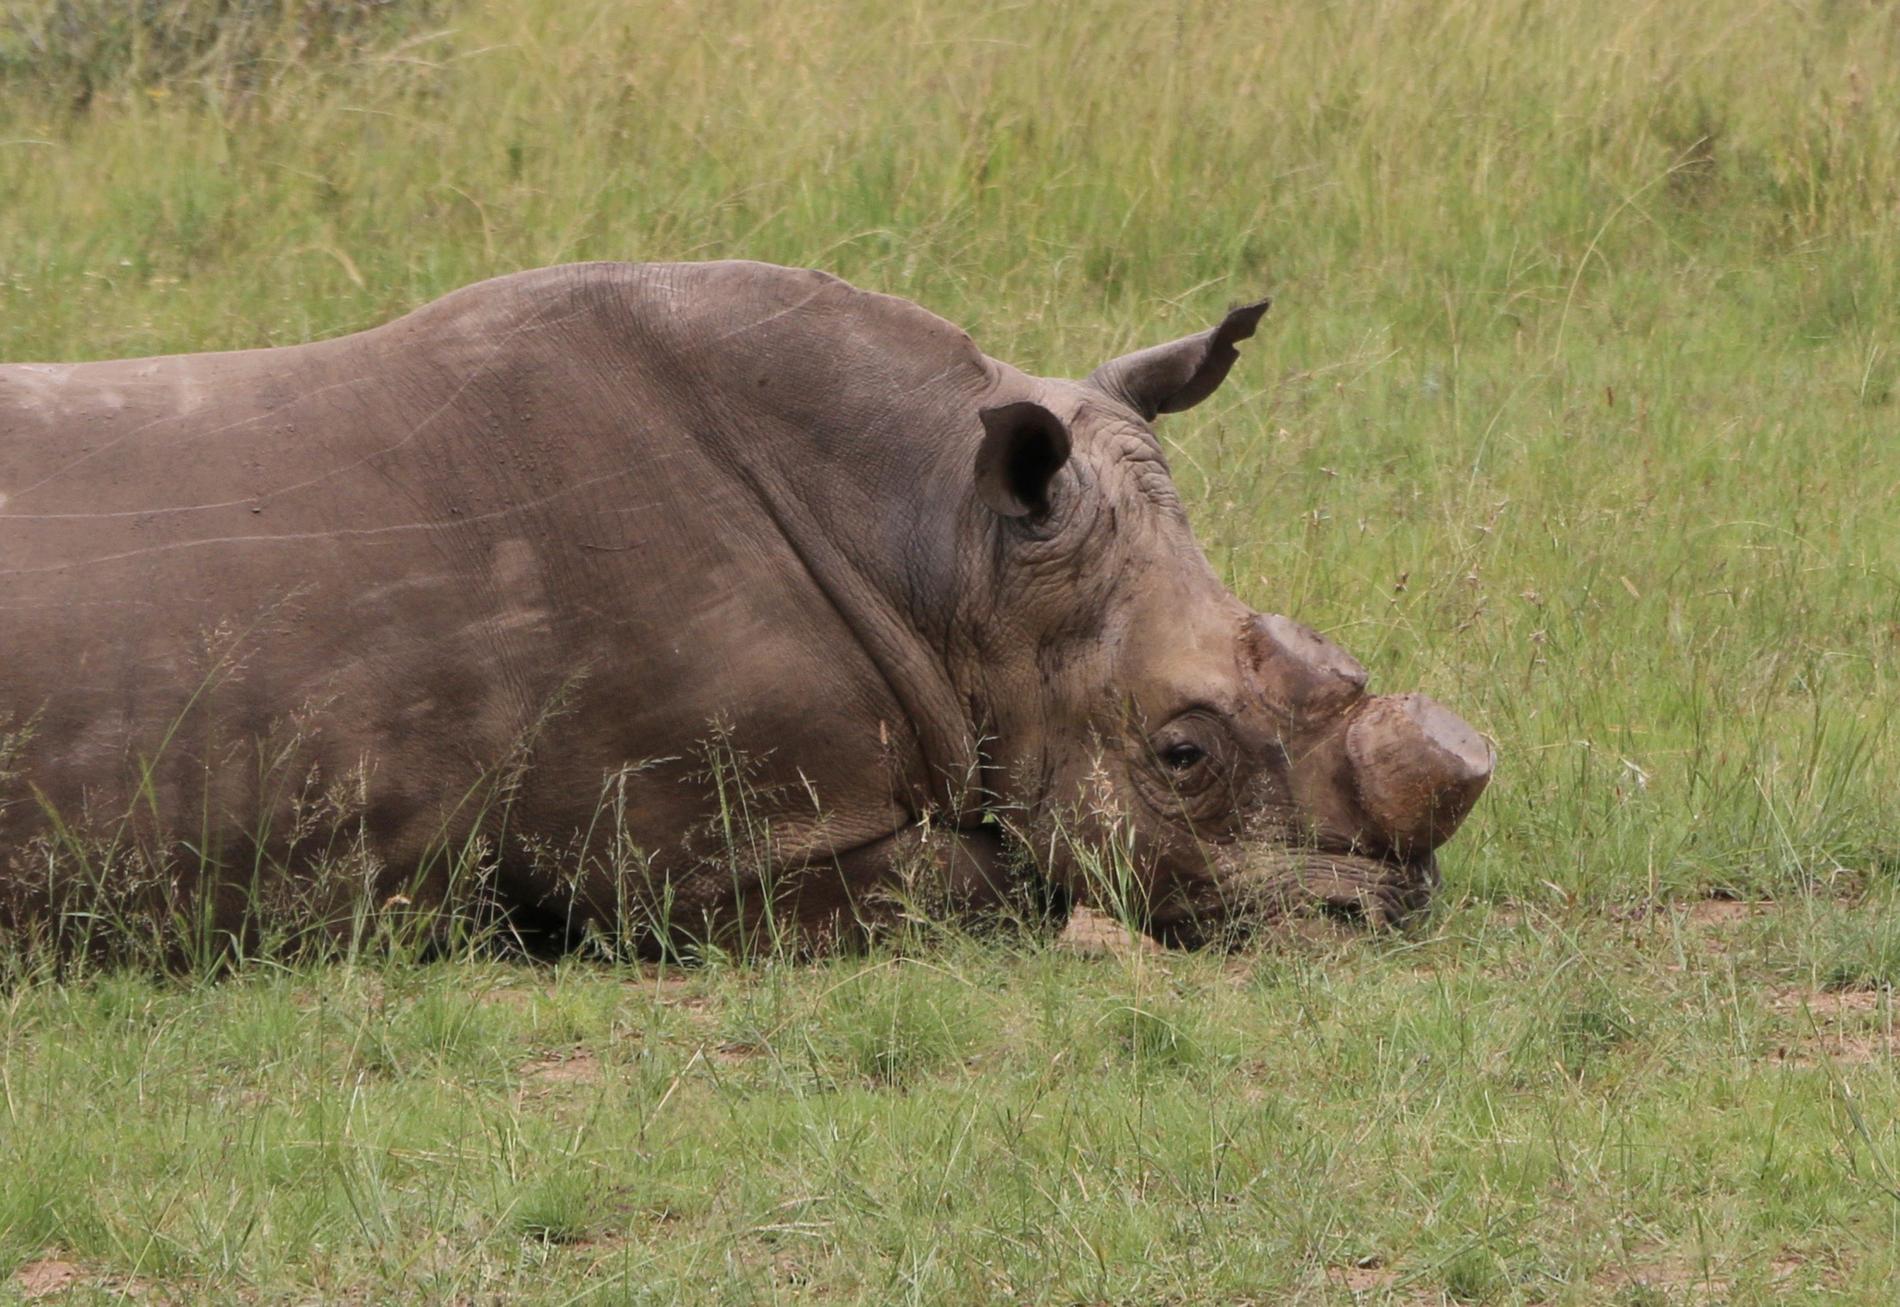 Fler än 1 000 noshörningar dödas i Sydafrika varje år. Arkivbild.